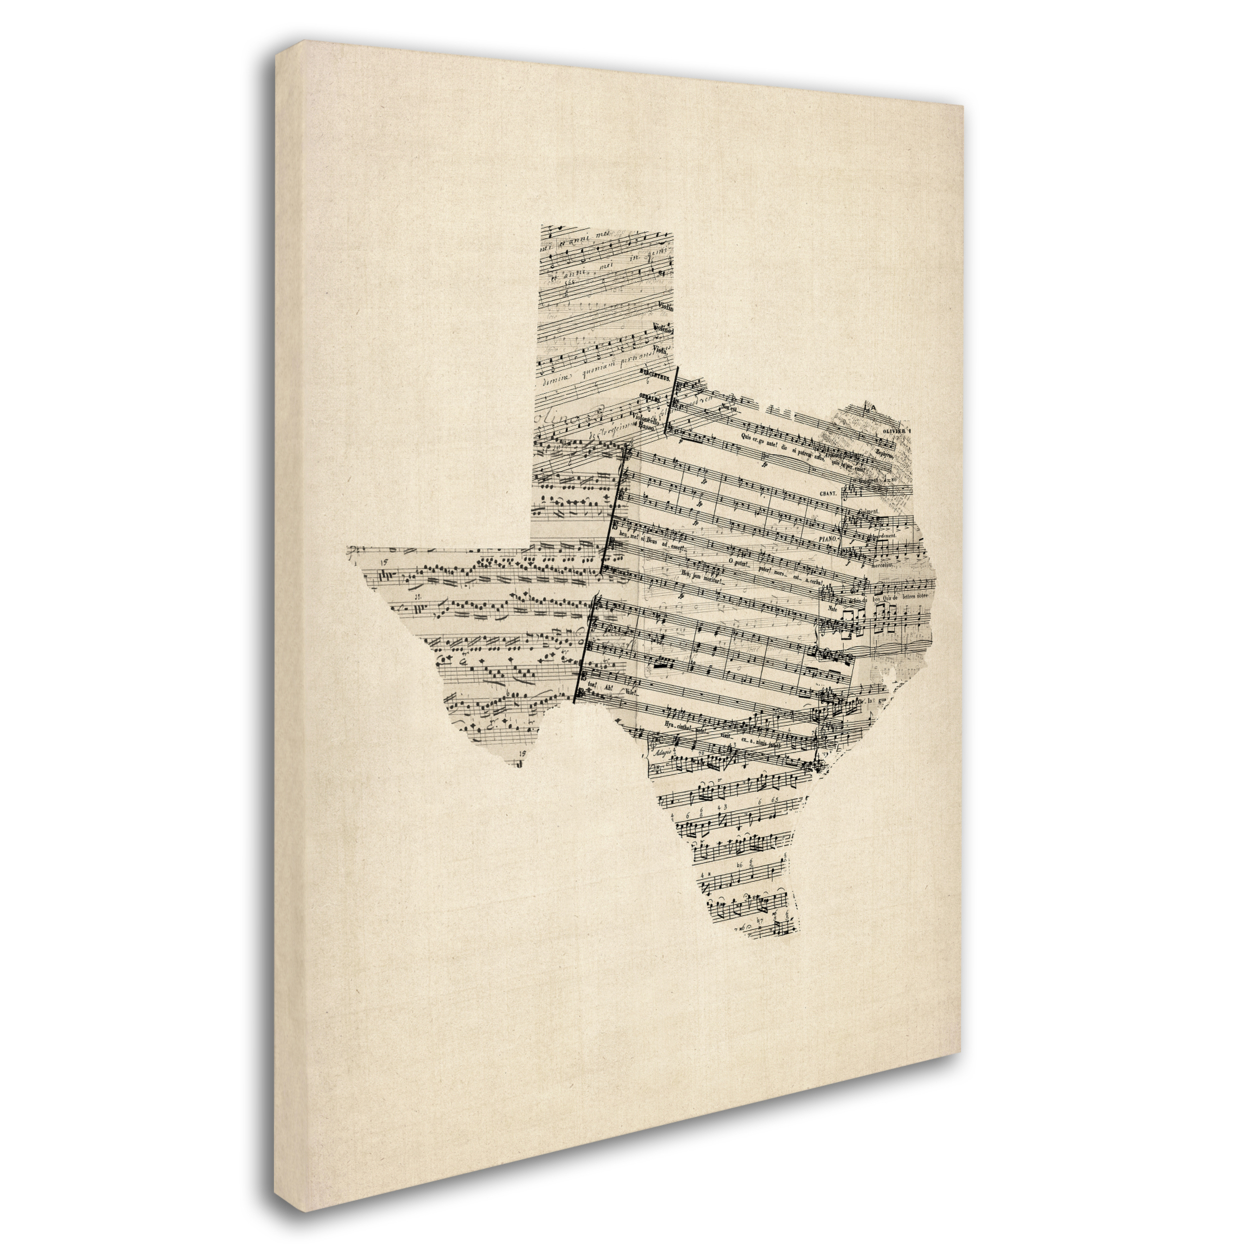 Michael Tompsett 'Old Sheet Music Map Of Texas' 14 X 19 Canvas Art